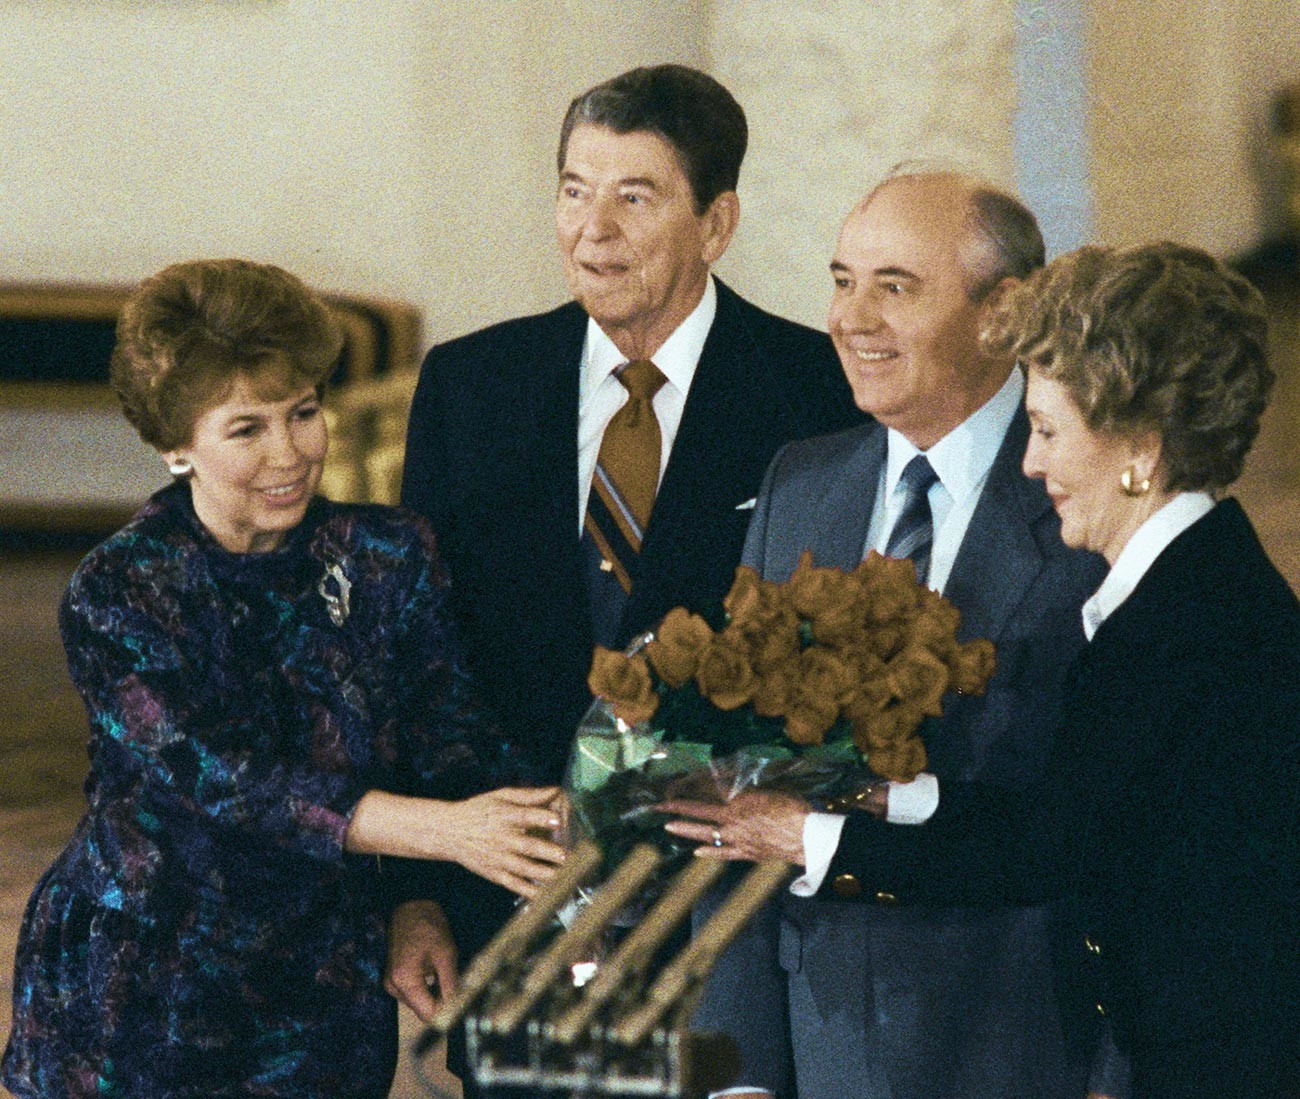 Mikhaïl Gorbatchev (deuxième à droite), Ronald Reagan (au centre) et leurs épouses au kremlin